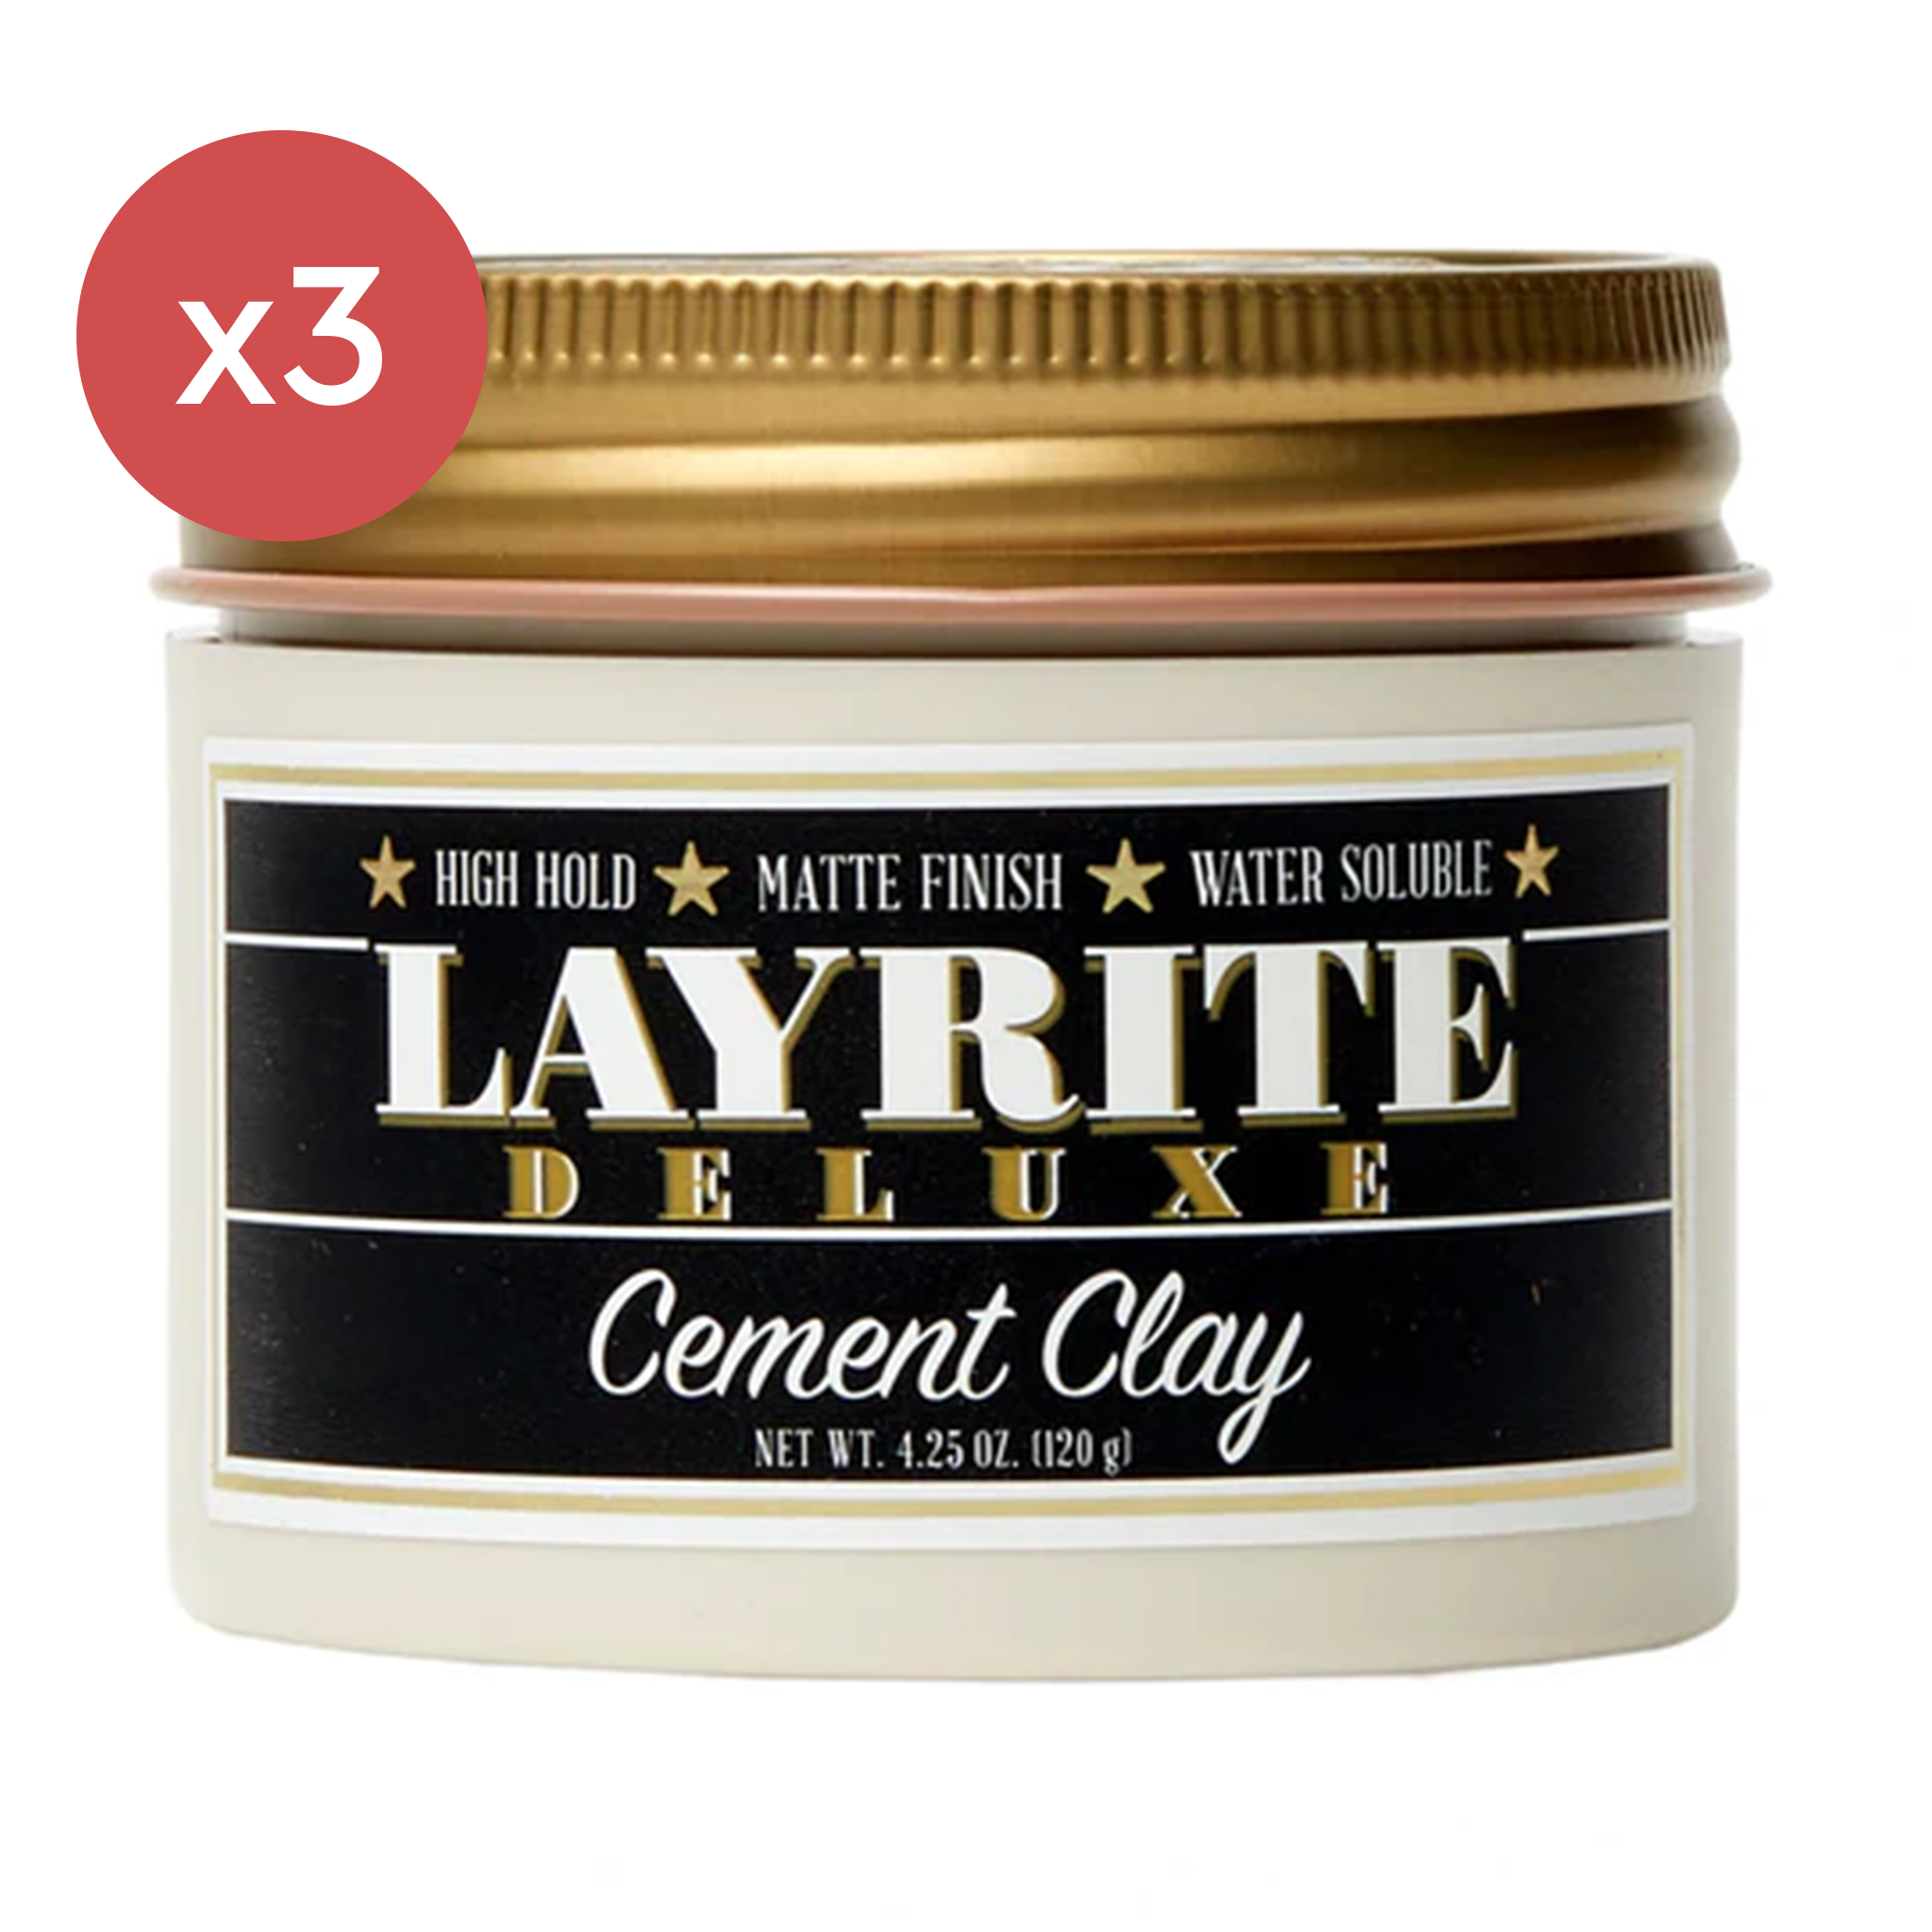 Layrite Cement Clay Trio